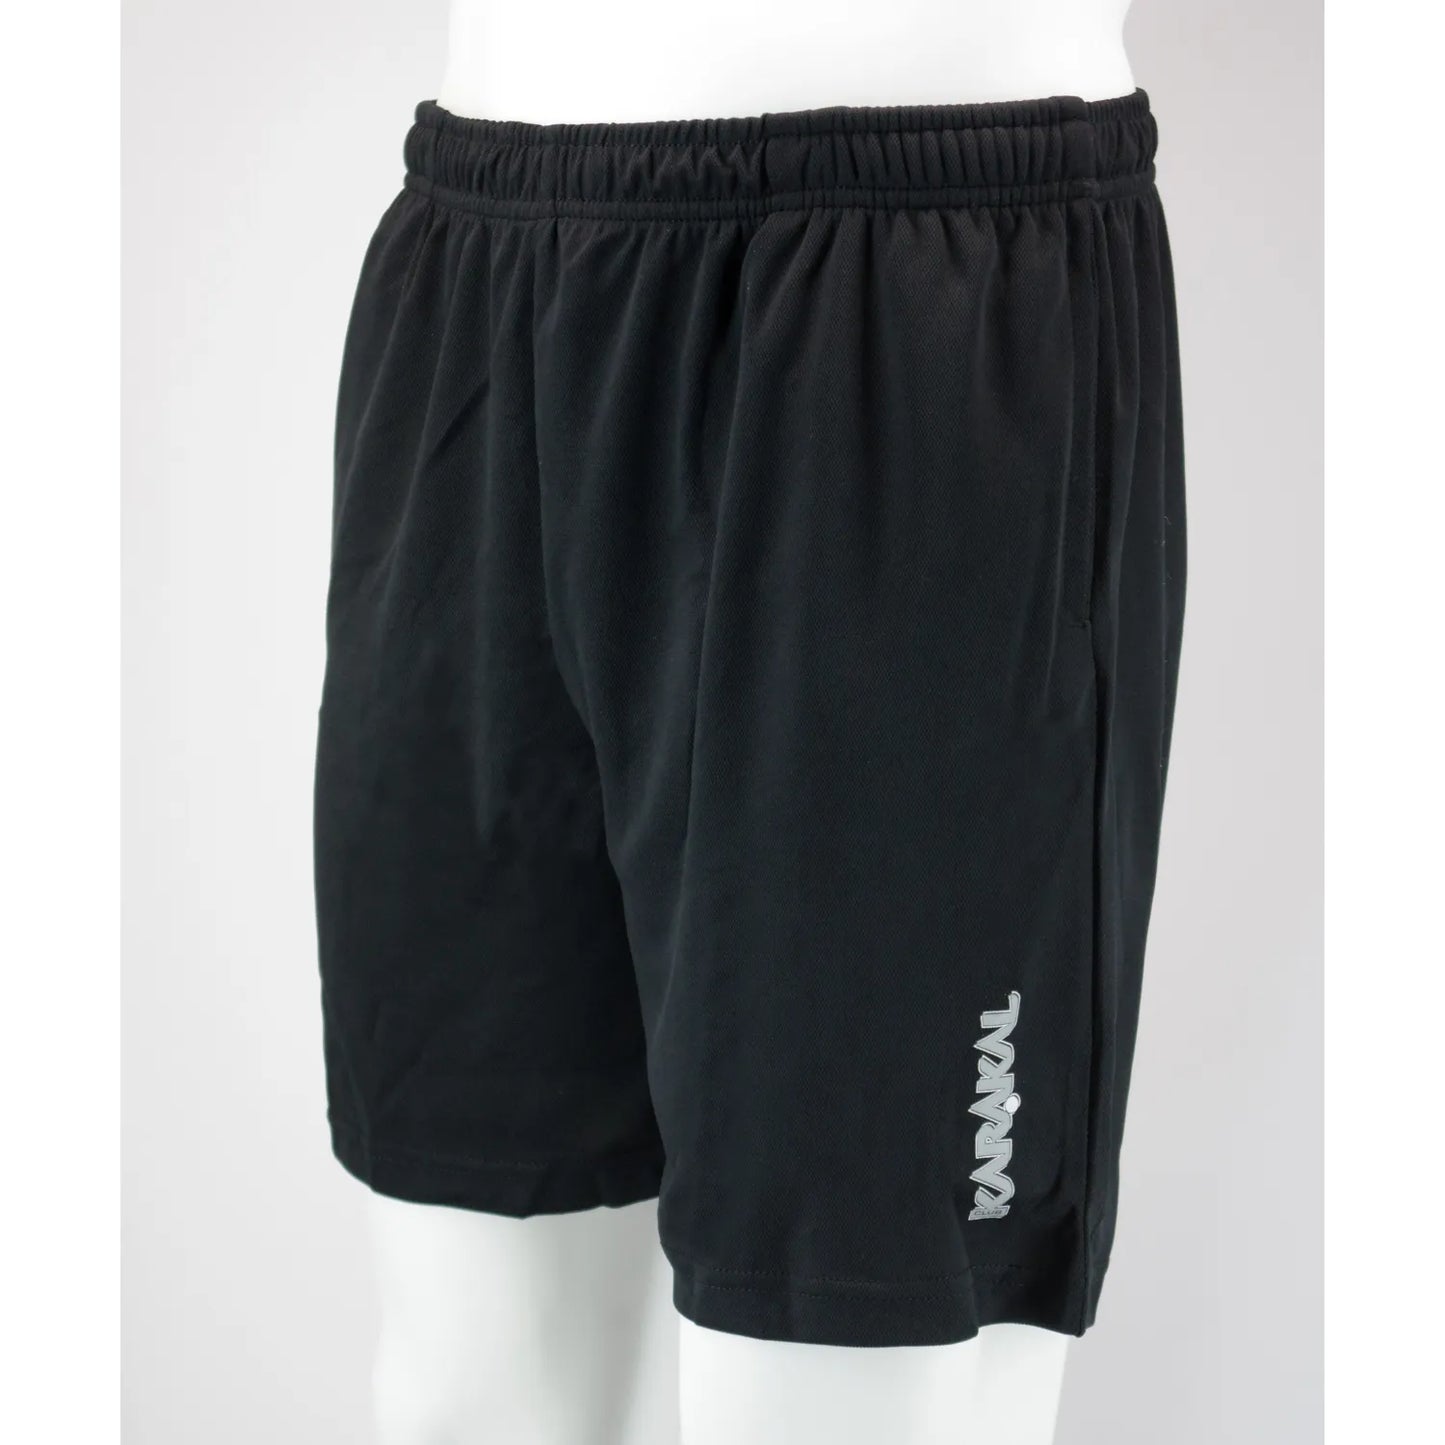 Karakal Club Shorts